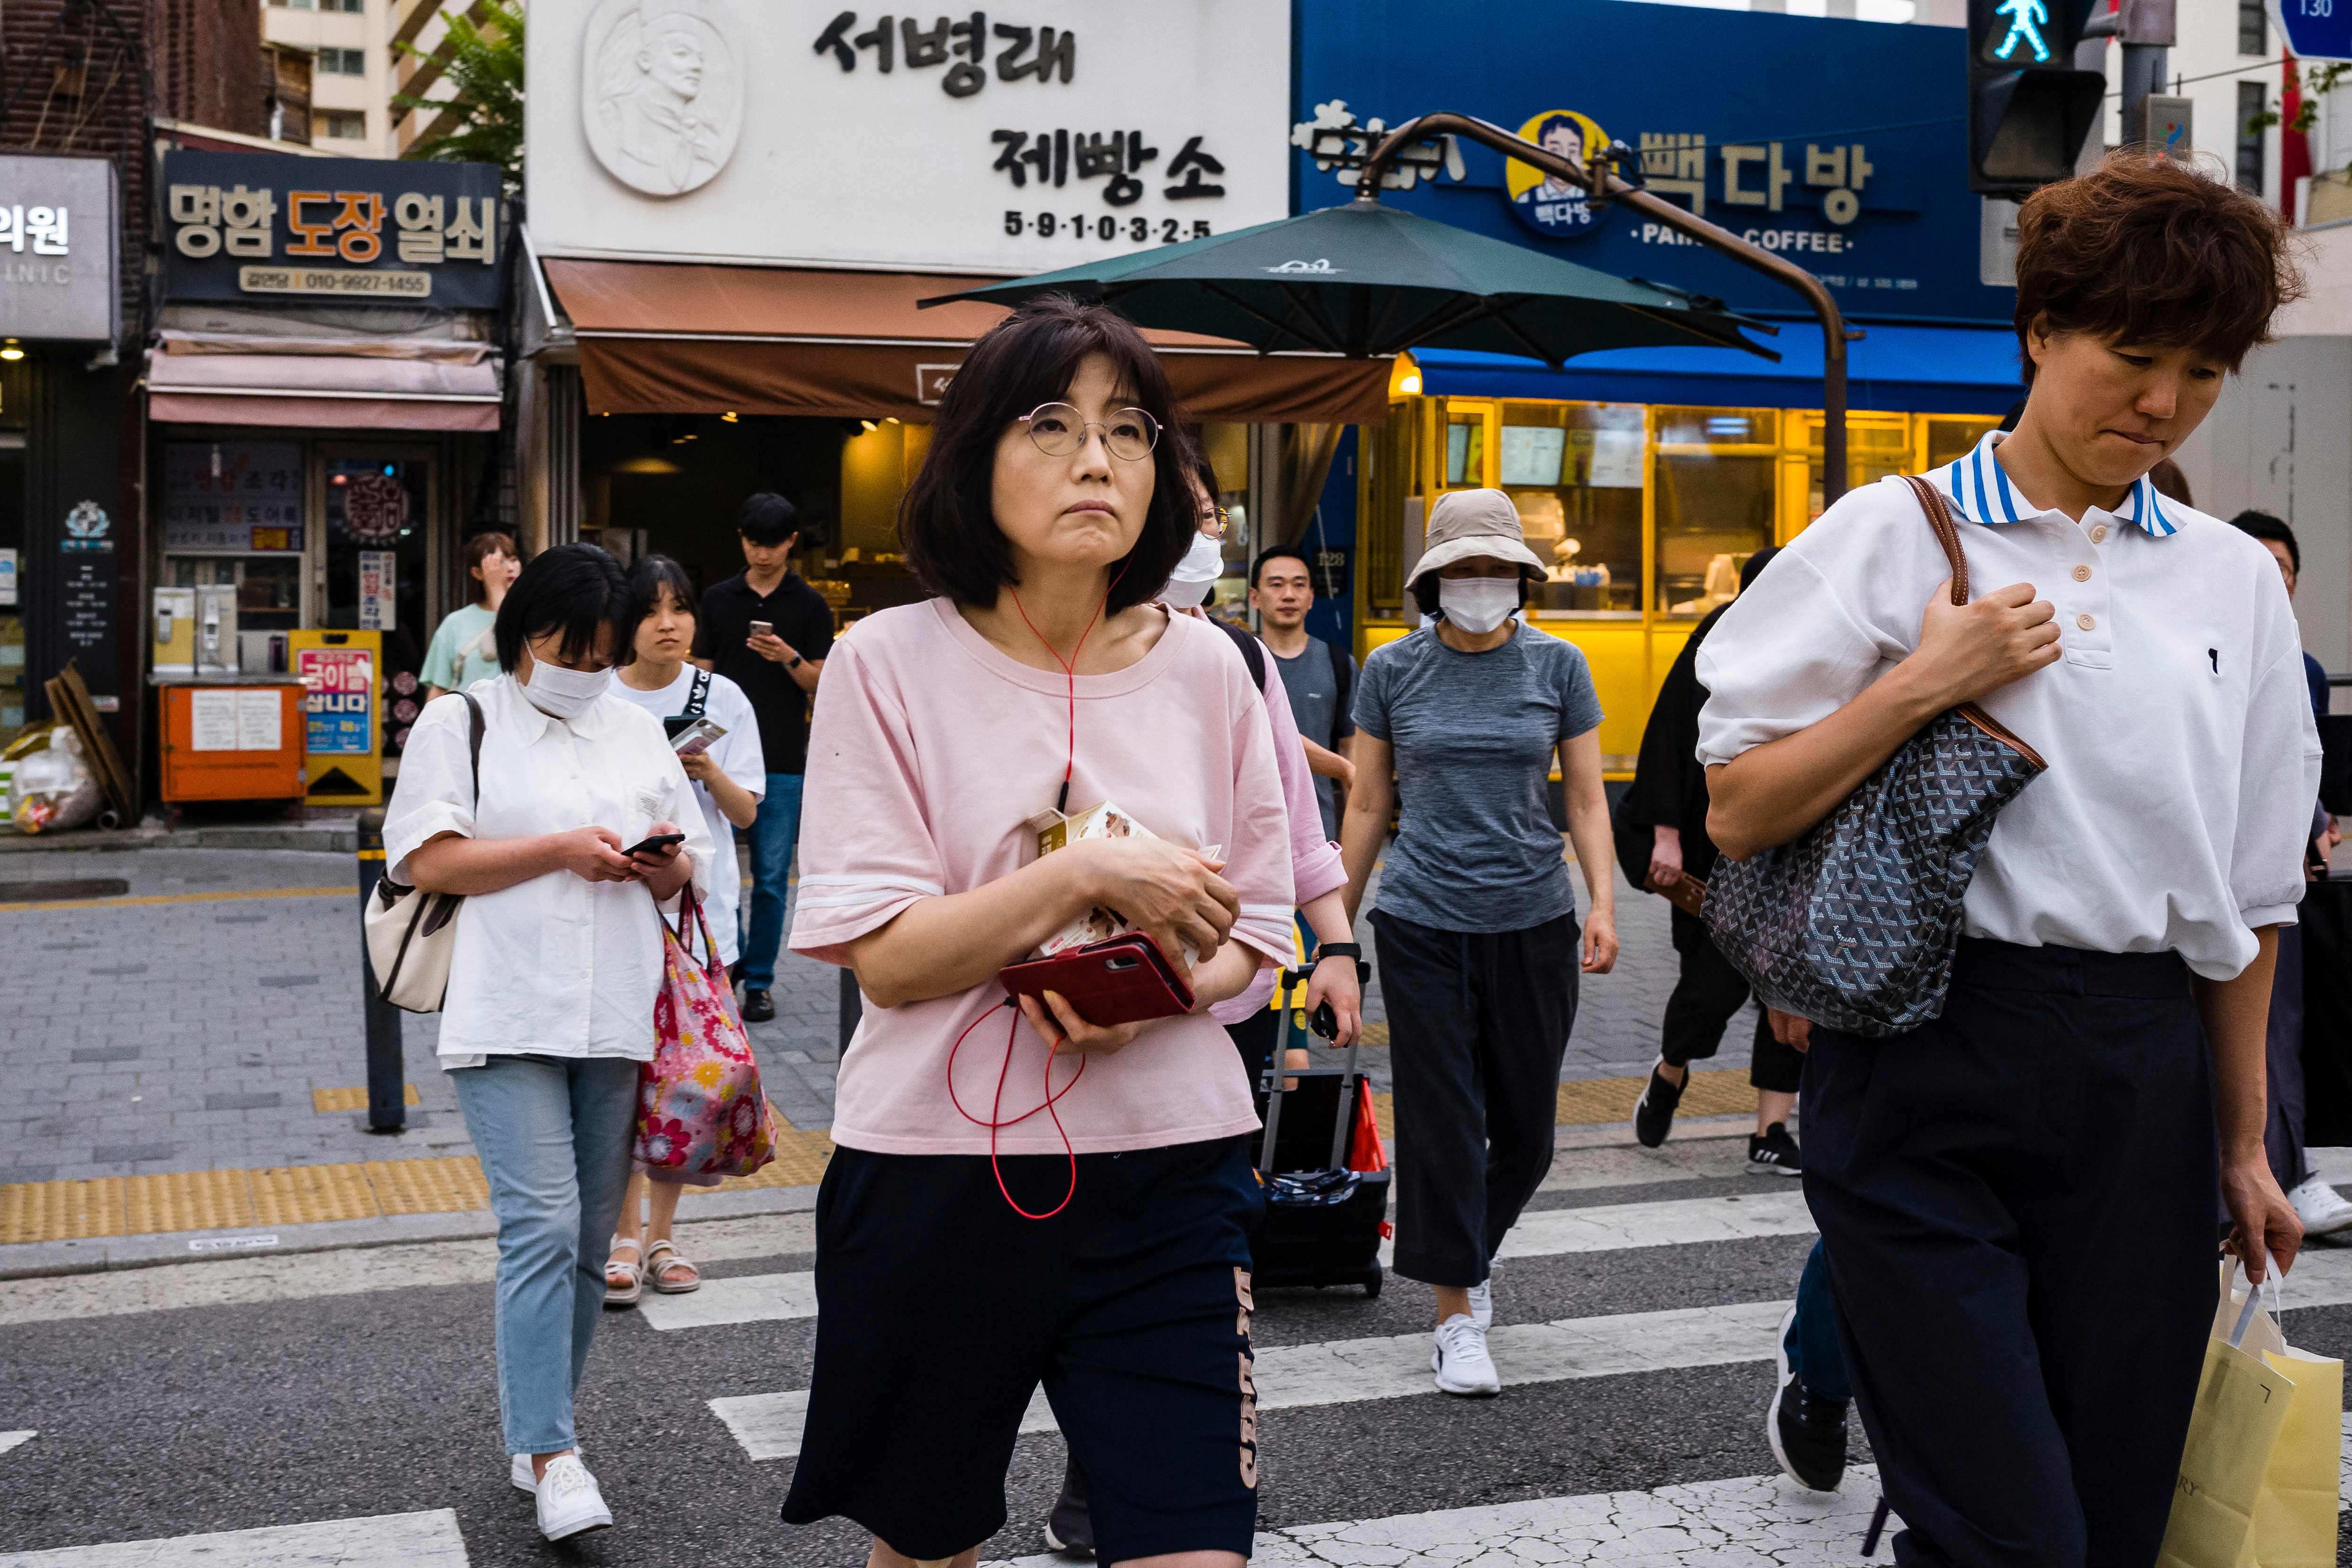 Pedestrians walk across a road in Seoul